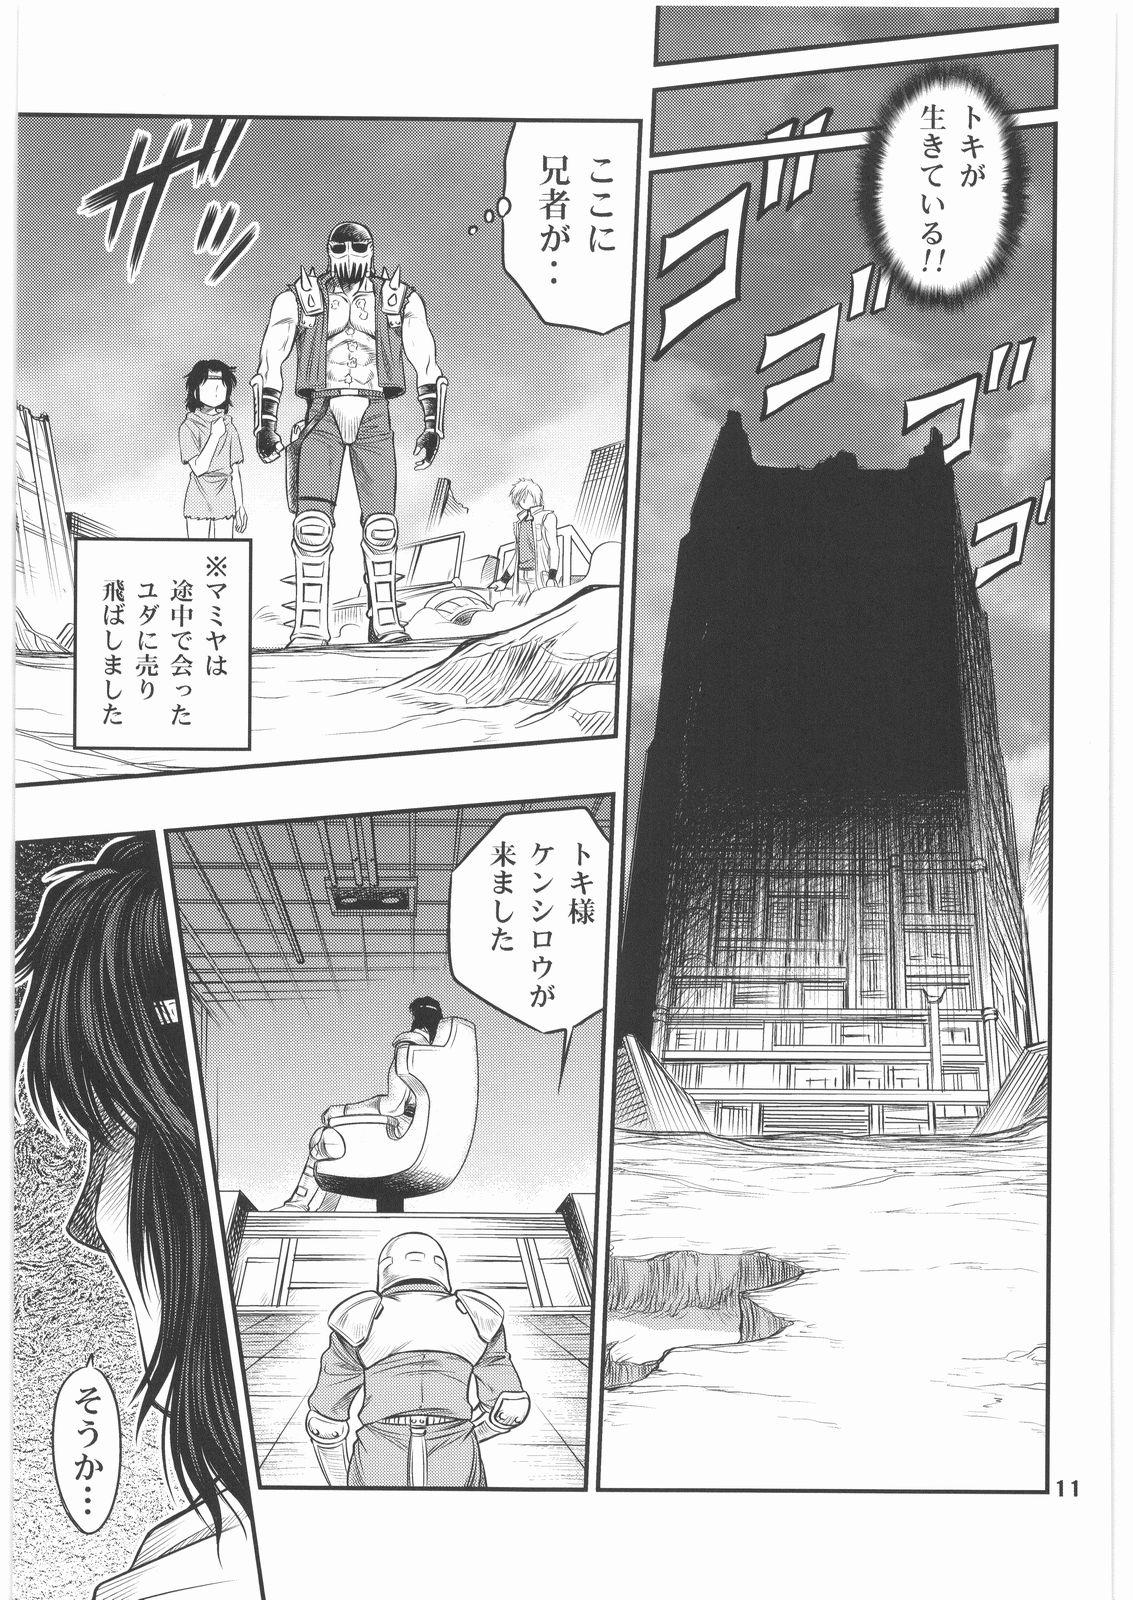 All Seikimatsu Tetsu Kamen Densetsu 2 - Fist of the north star Boots - Page 10